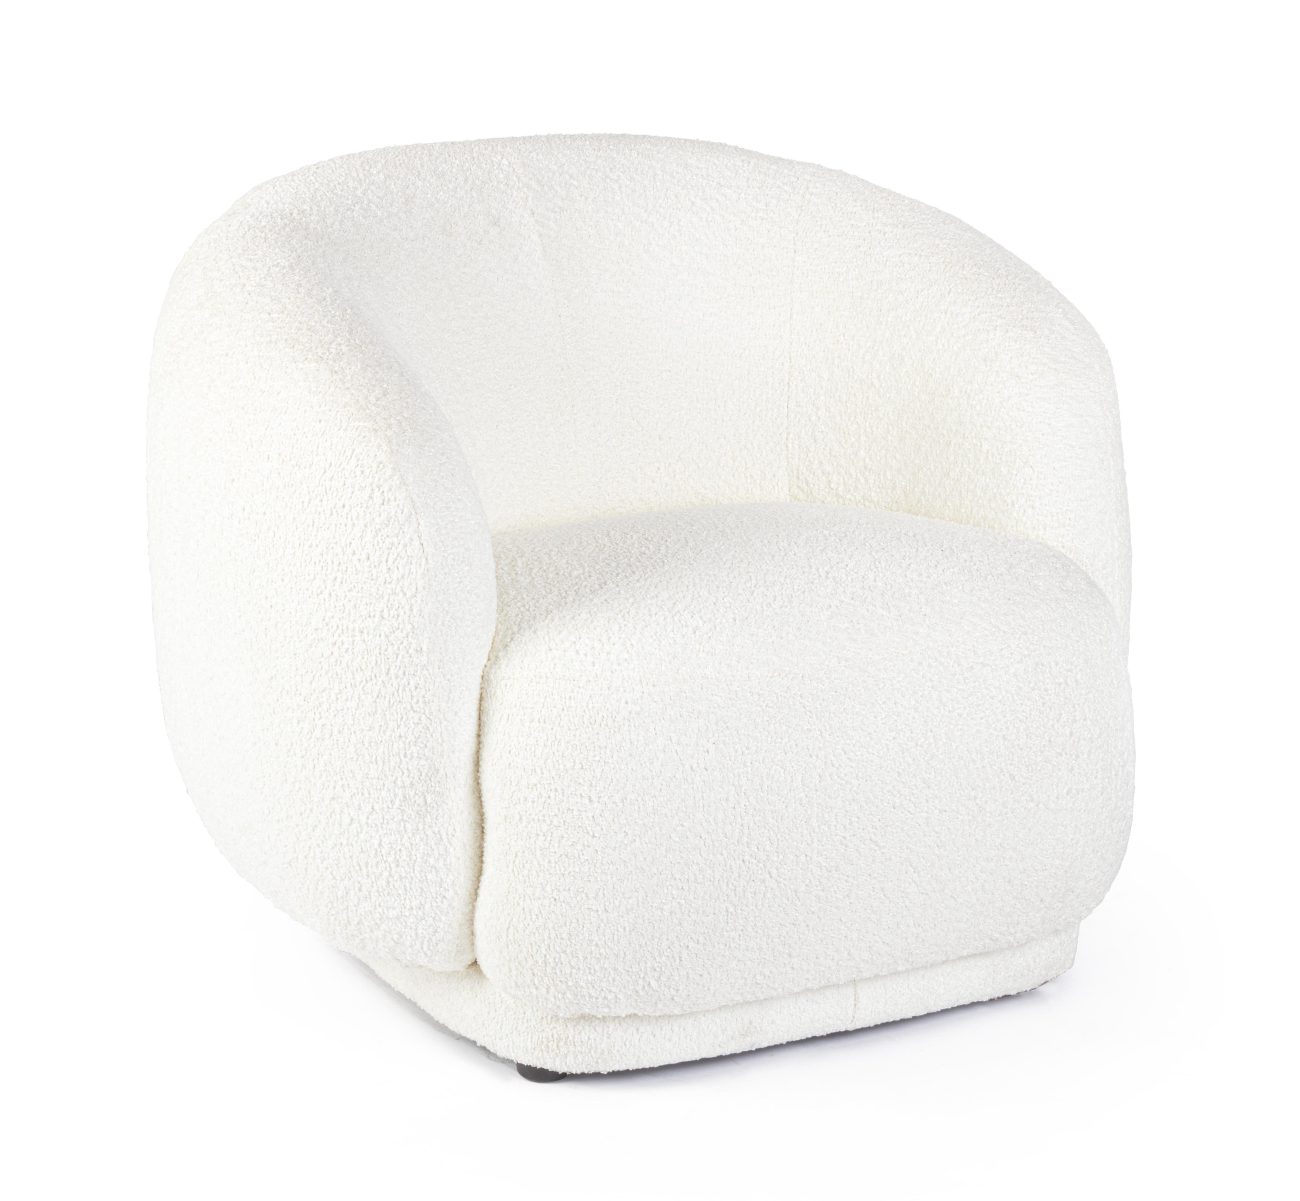 Der Sessel Tecla überzeugt mit seinem modernen Stil. Gefertigt wurde er aus Boucle-Stoff, welcher einen weißen Farbton besitzt. Der Sessel besitzt eine Sitzhöhe von 43 cm.